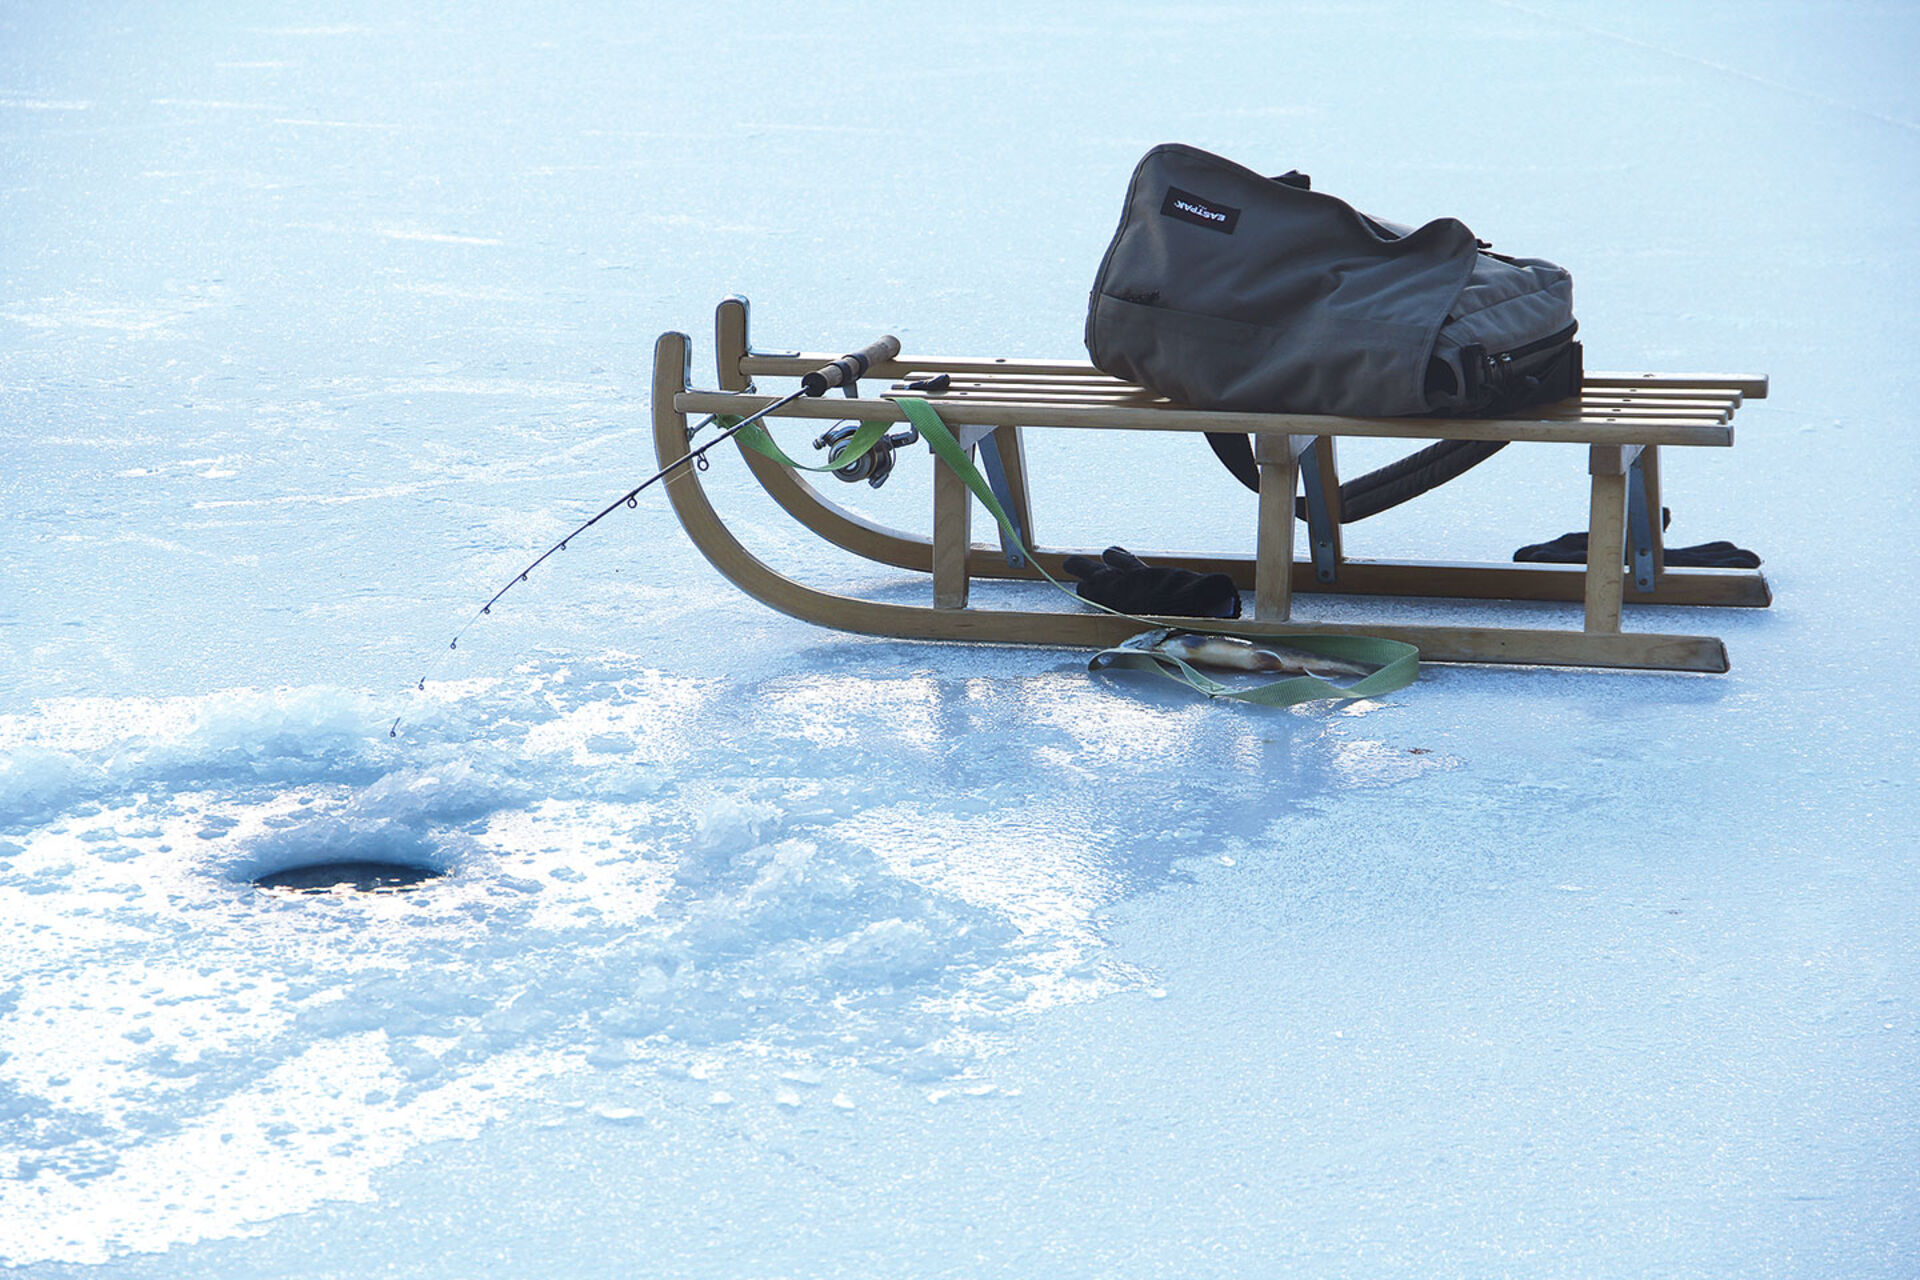  Es lohnt sich, einen Schlitten als Sitzgelegenheit und Transportmittel mitzunehmen. Am Öschinensee kann man nach dem Fischen zudem eine tolle Talabfahrt machen!  